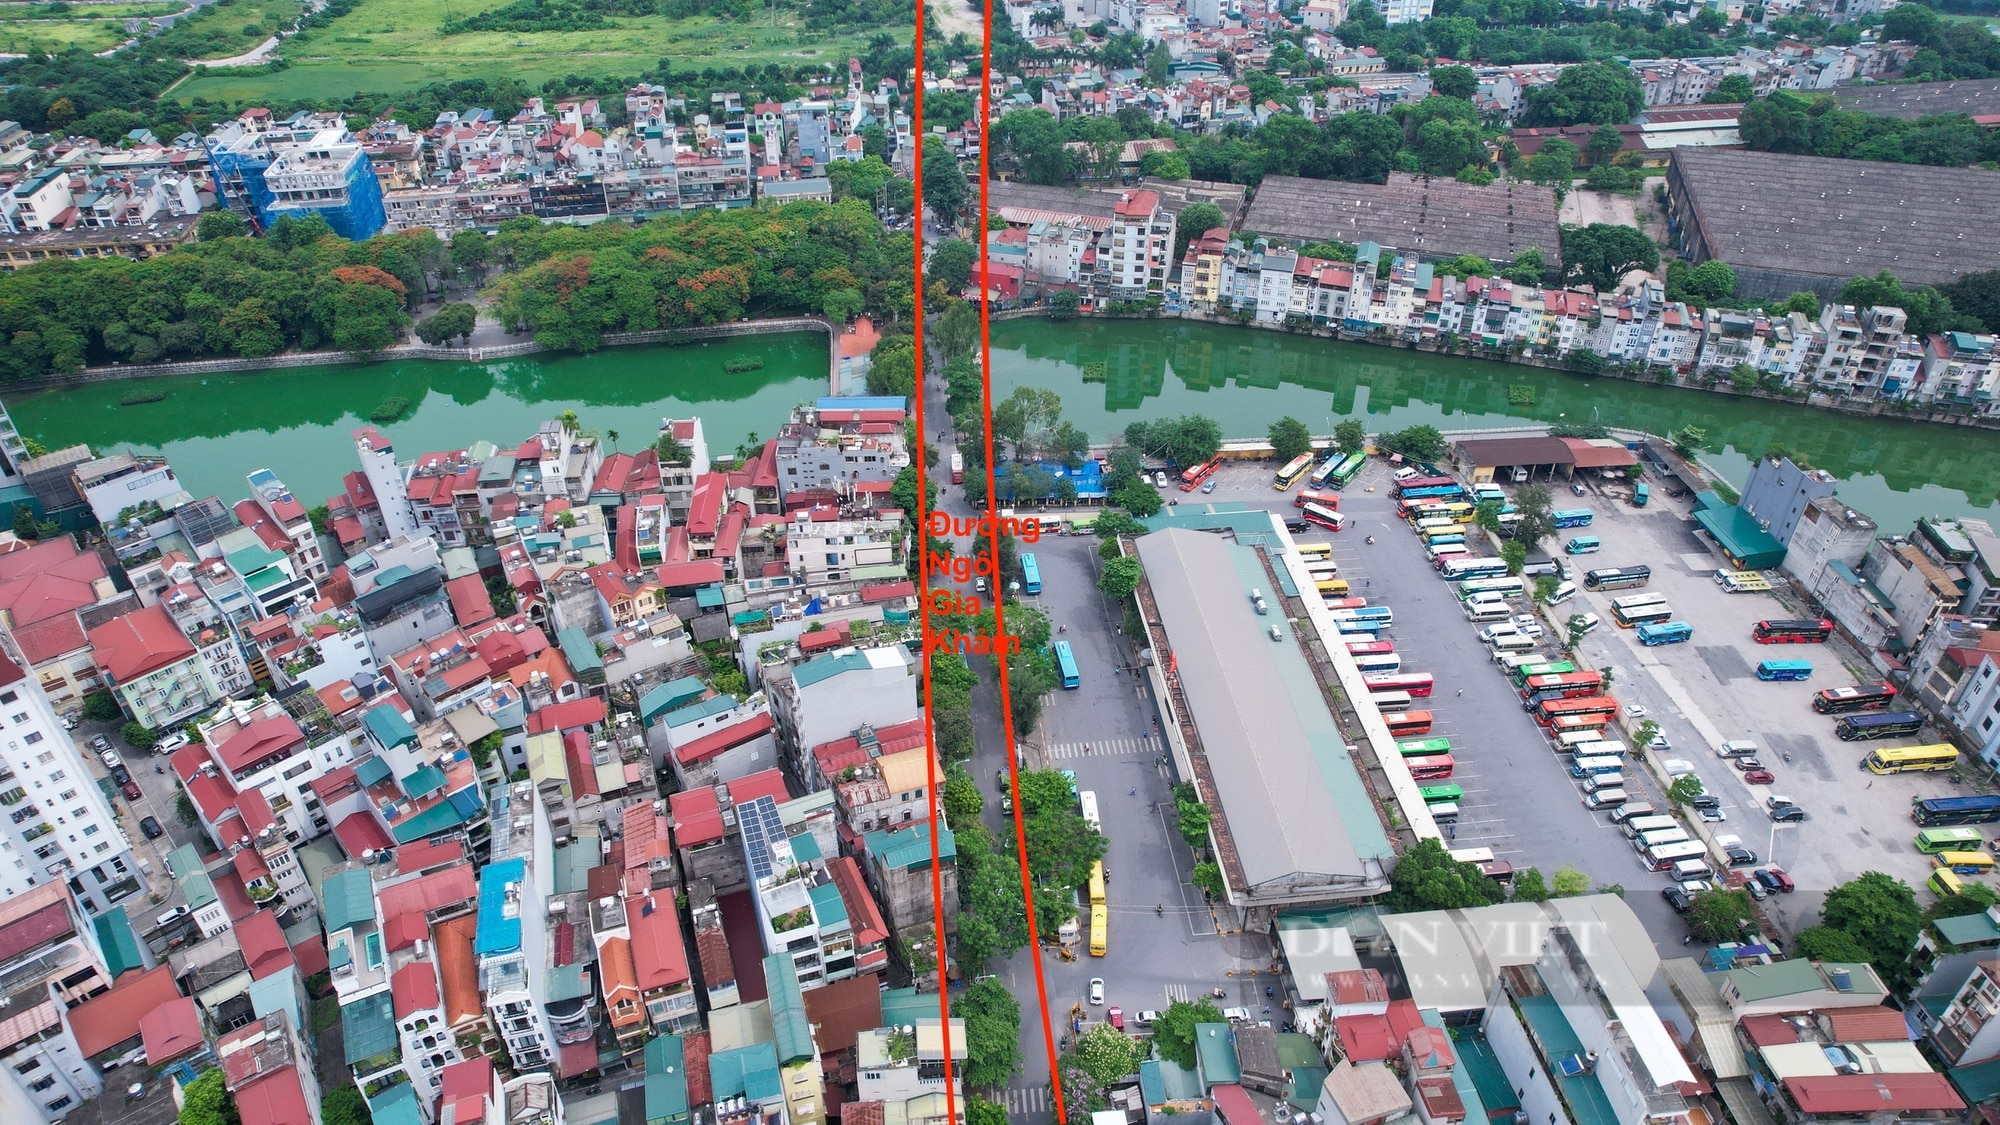 Hình ảnh 2 tuyến đường ở quận Long Biên chuẩn bị được đầu tư mở rộng lên 4 làn xe- Ảnh 1.